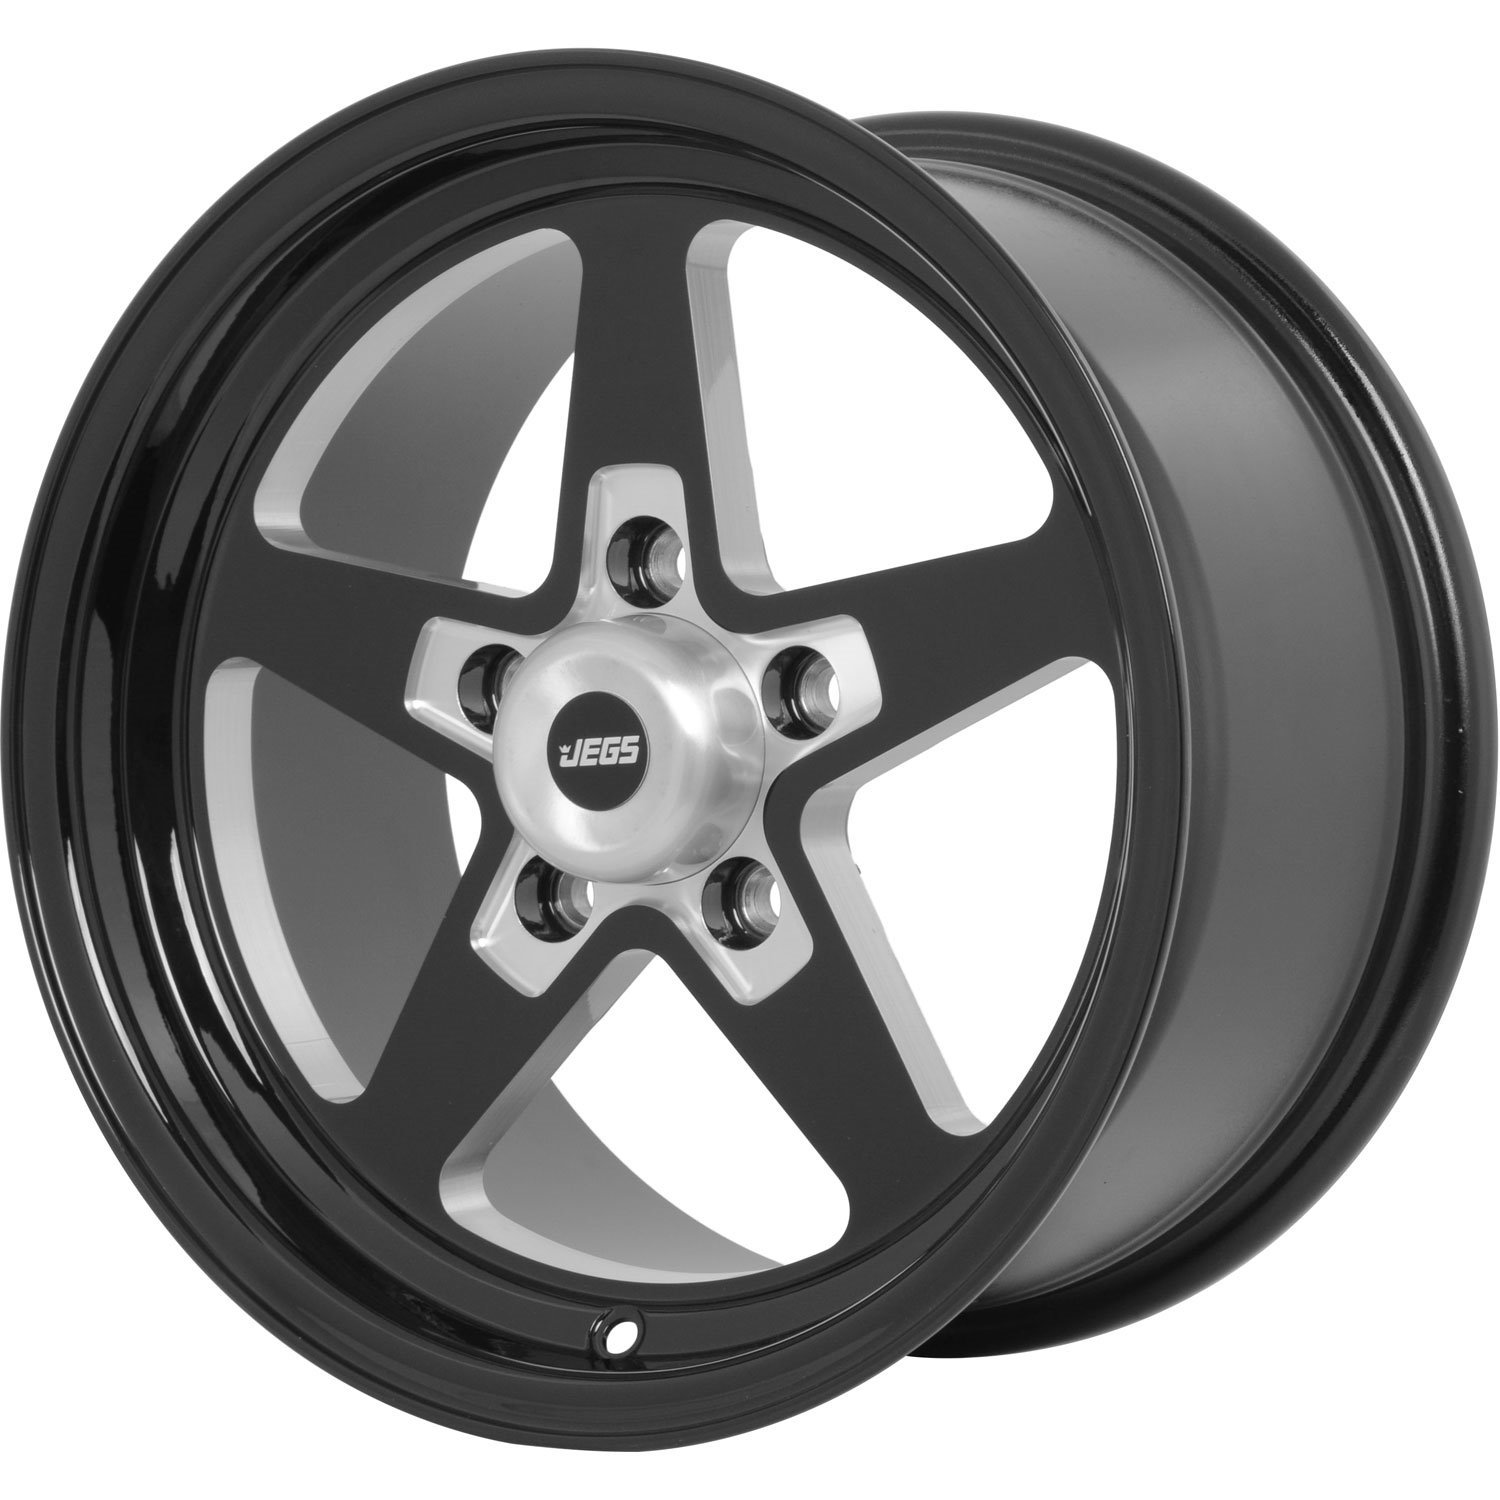 SSR Star Wheel [Size: 15" x 8"] Gloss Black